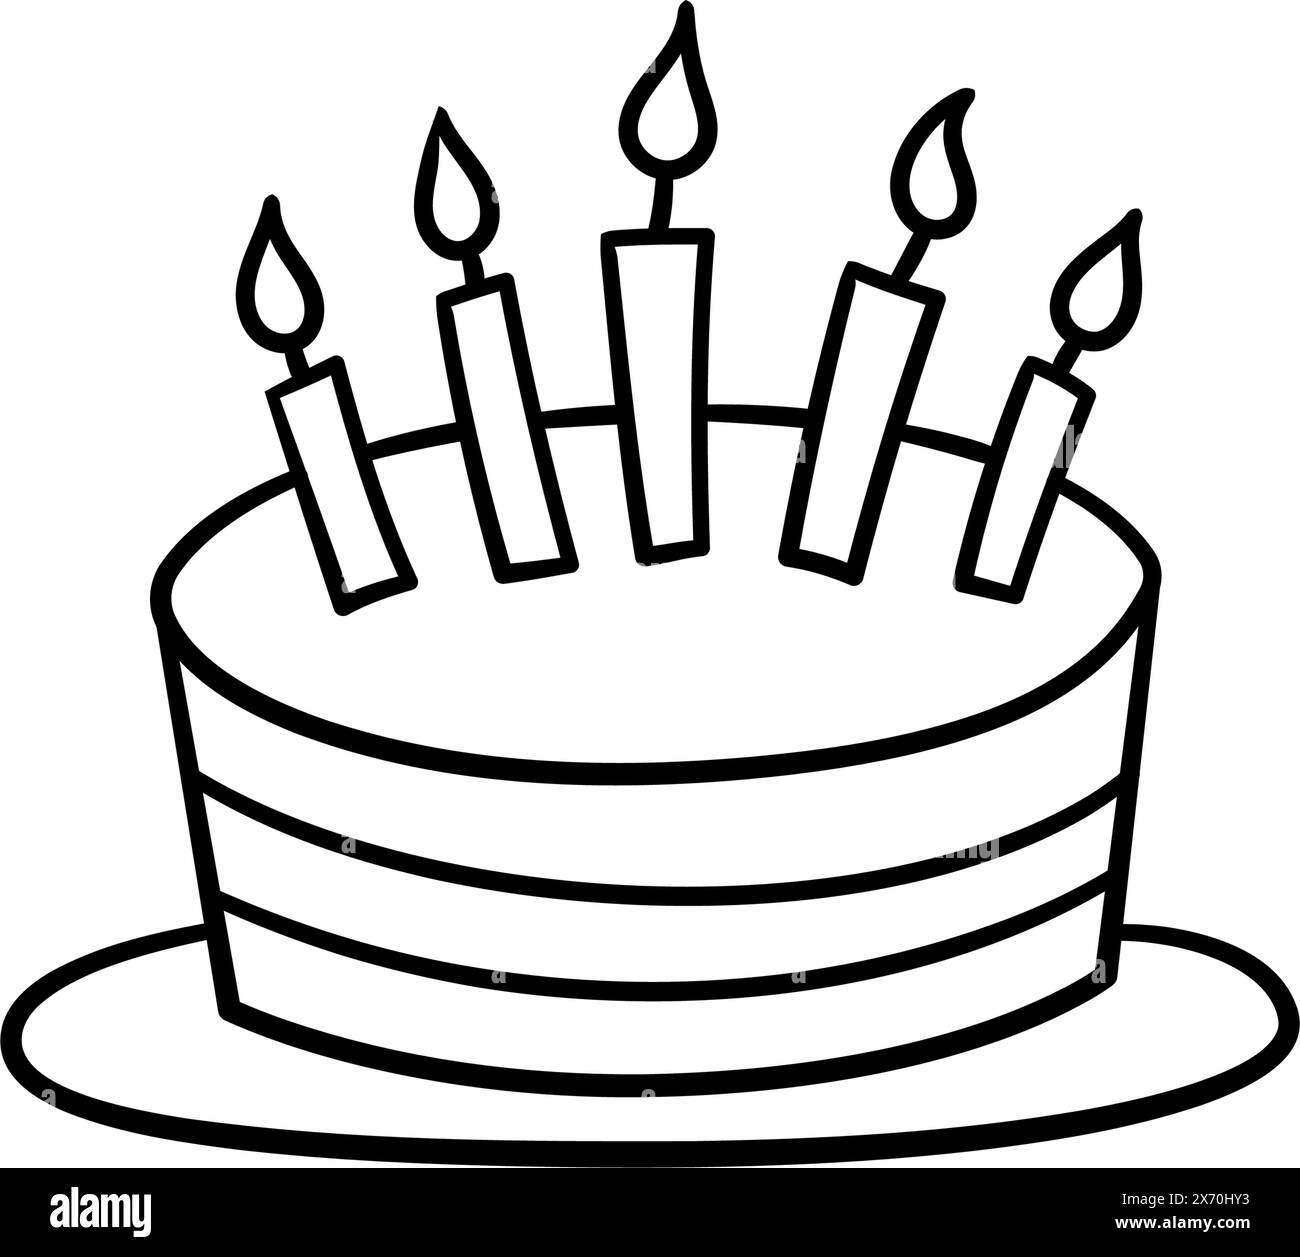 Gâteau d'anniversaire dessiné à la main avec cinq bougies. Les enfants gribouillent le dessin. Illustration vectorielle isolée sur fond blanc Illustration de Vecteur